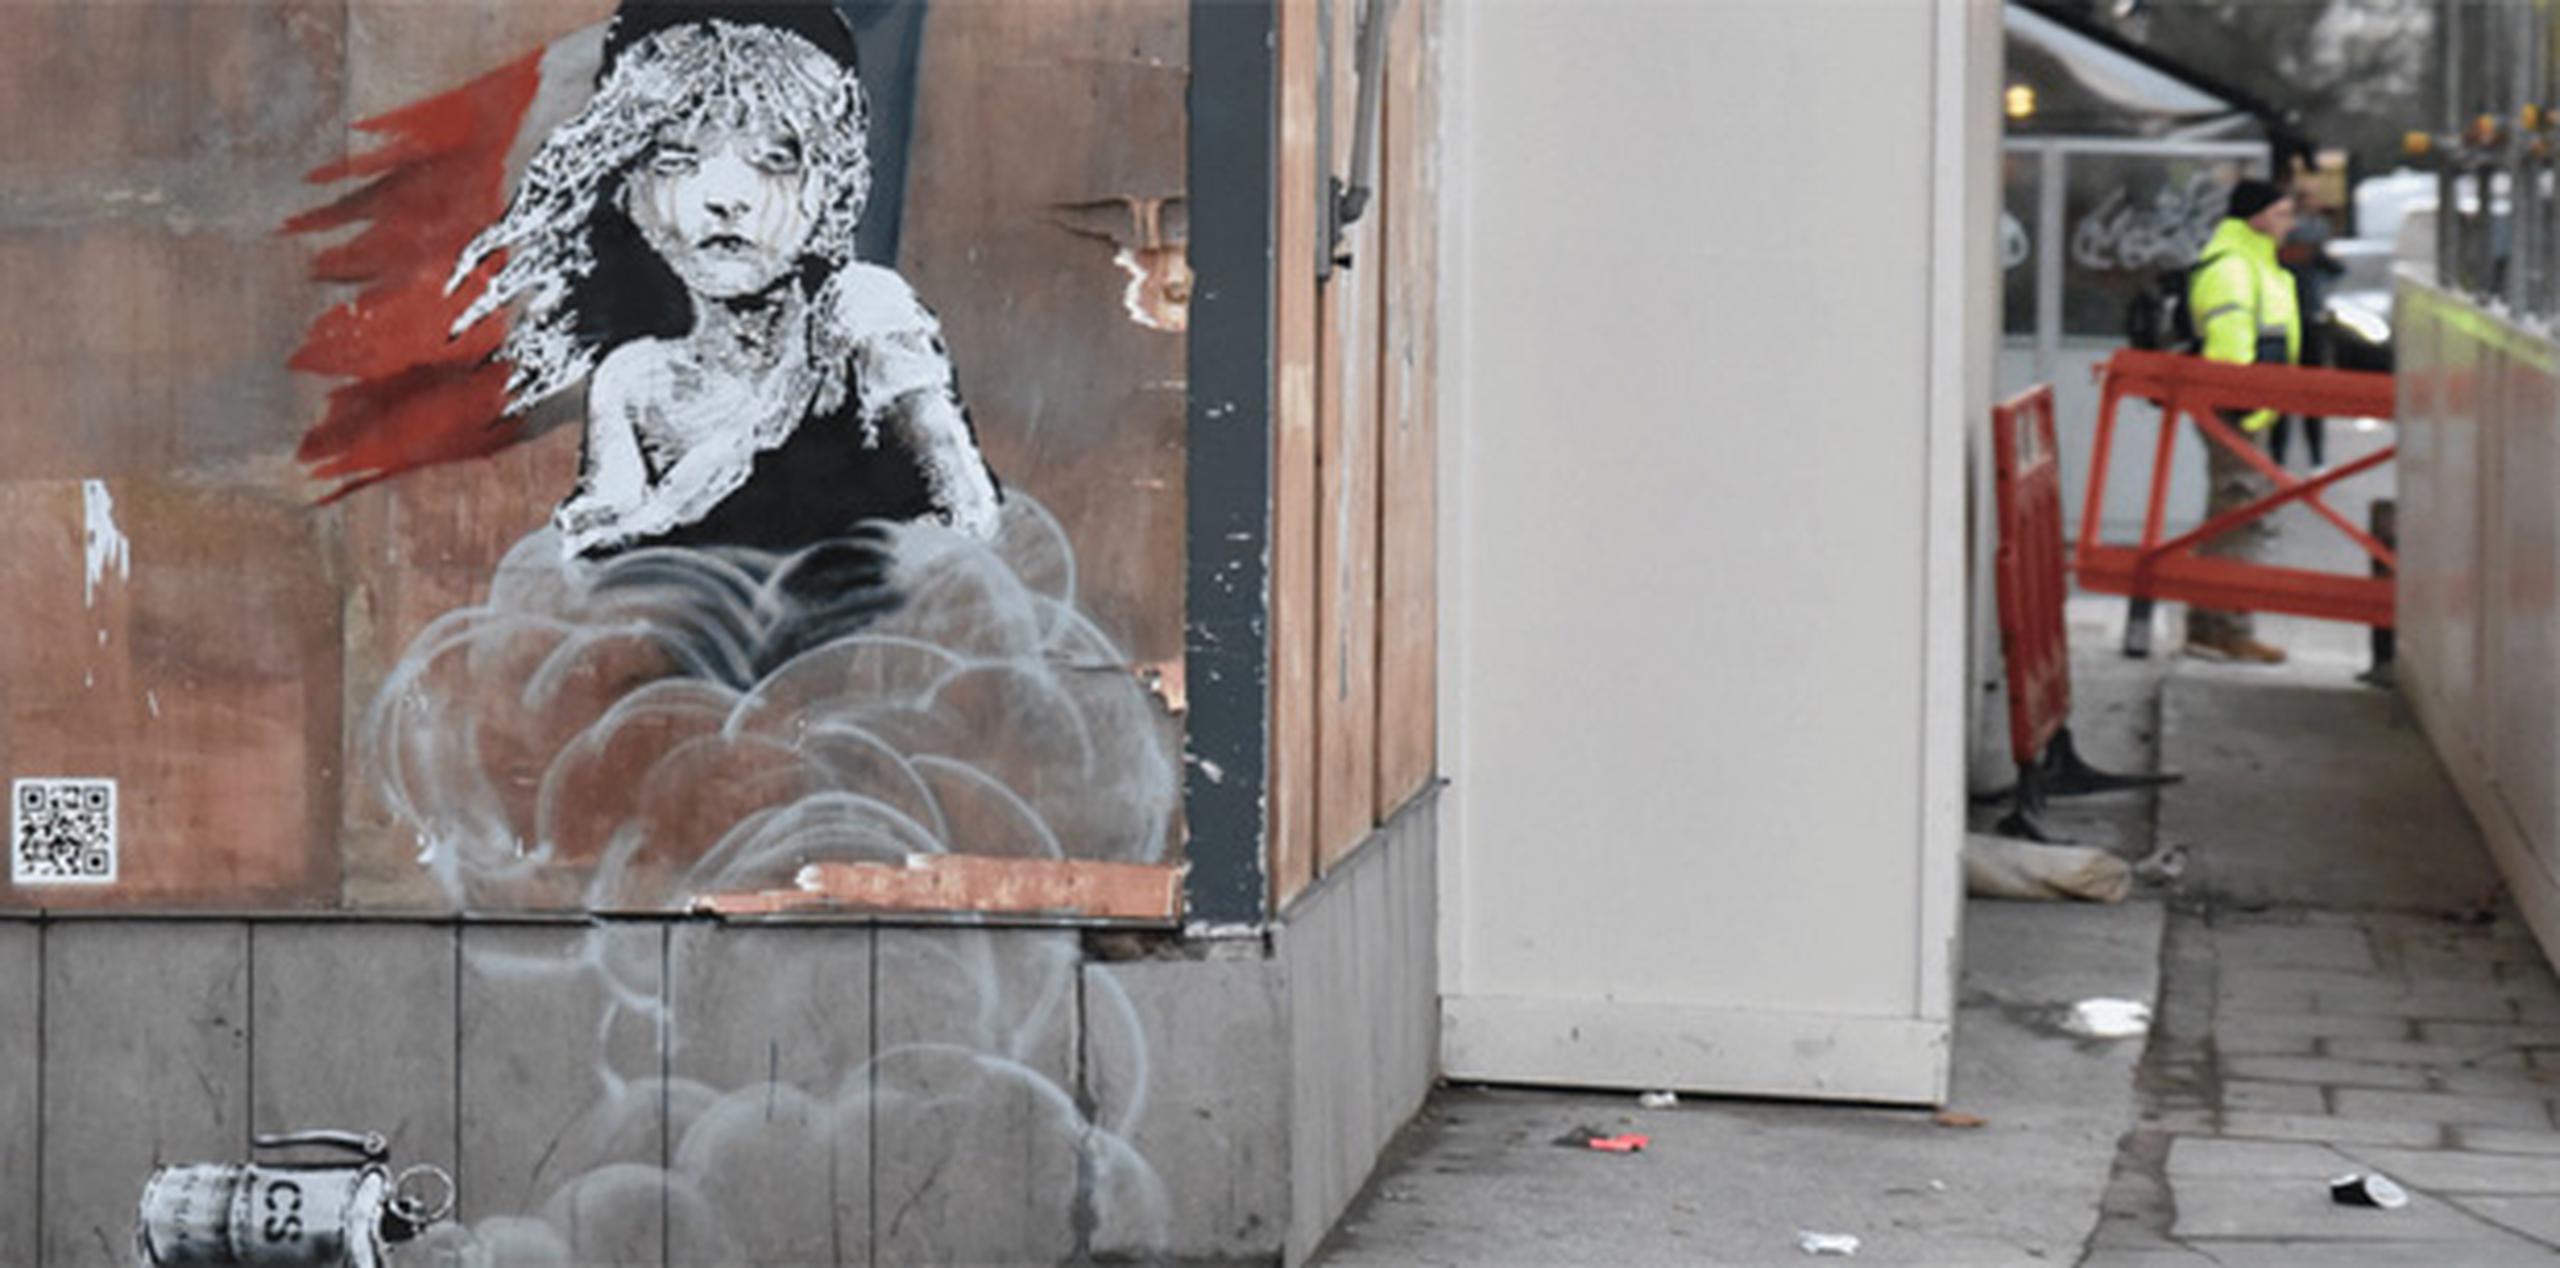 El mural del misterioso grafitero muestra a la niña pequeña que aparece en el musical "Los Miserables" con lágrimas en sus ojos, mientras que, de fondo, se ve una lata del citado gas. (twitter/indyarts)